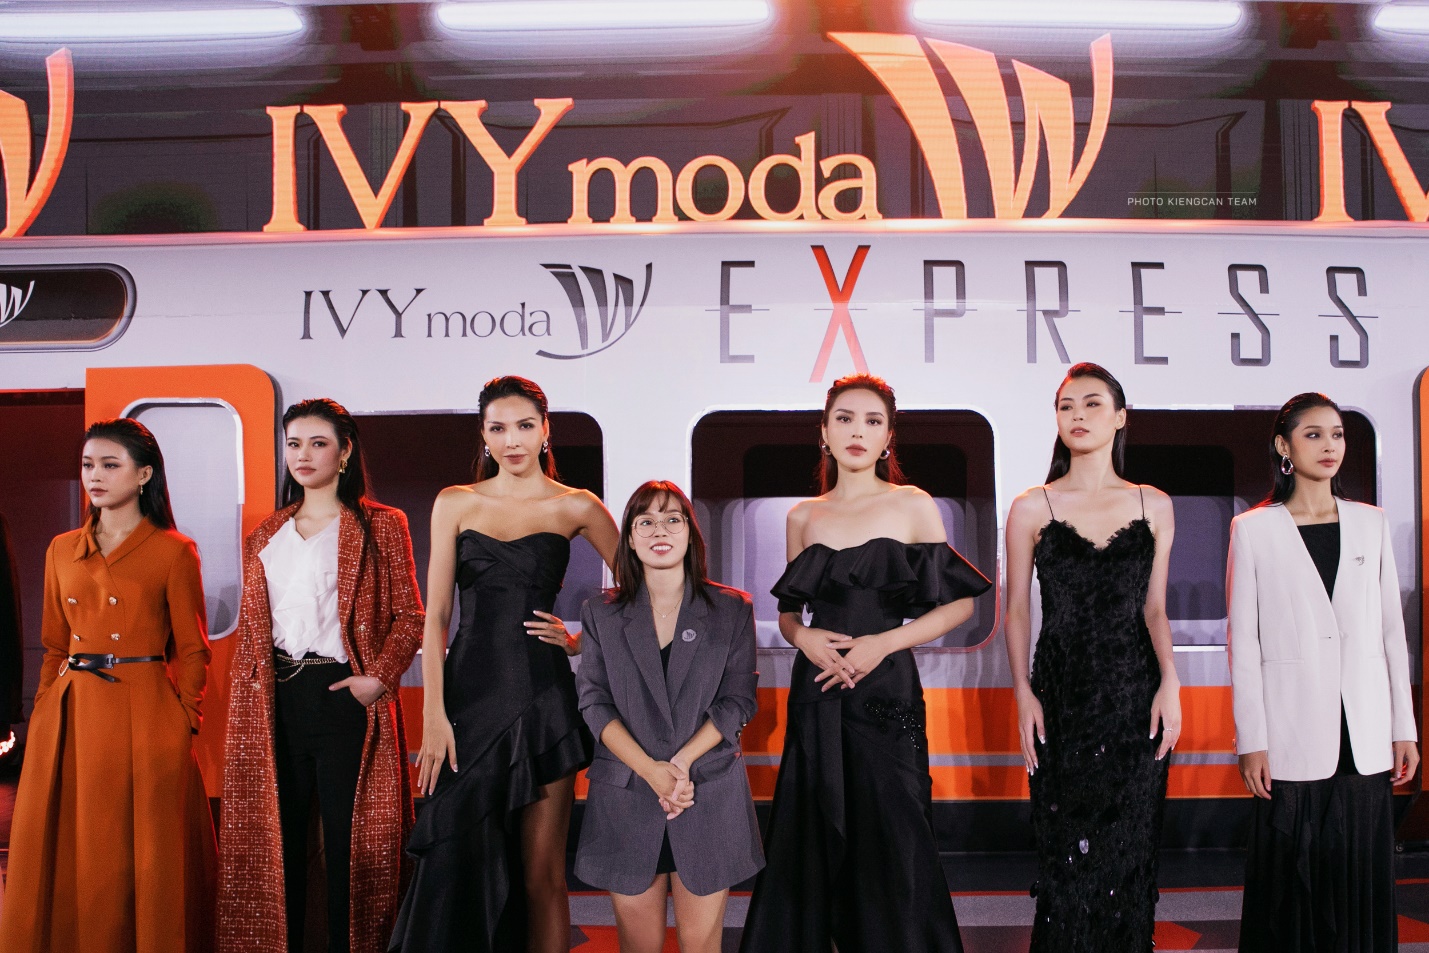 5 khoảnh khắc ghi dấu đẳng cấp của IVY moda tại show Express - Ảnh 3.